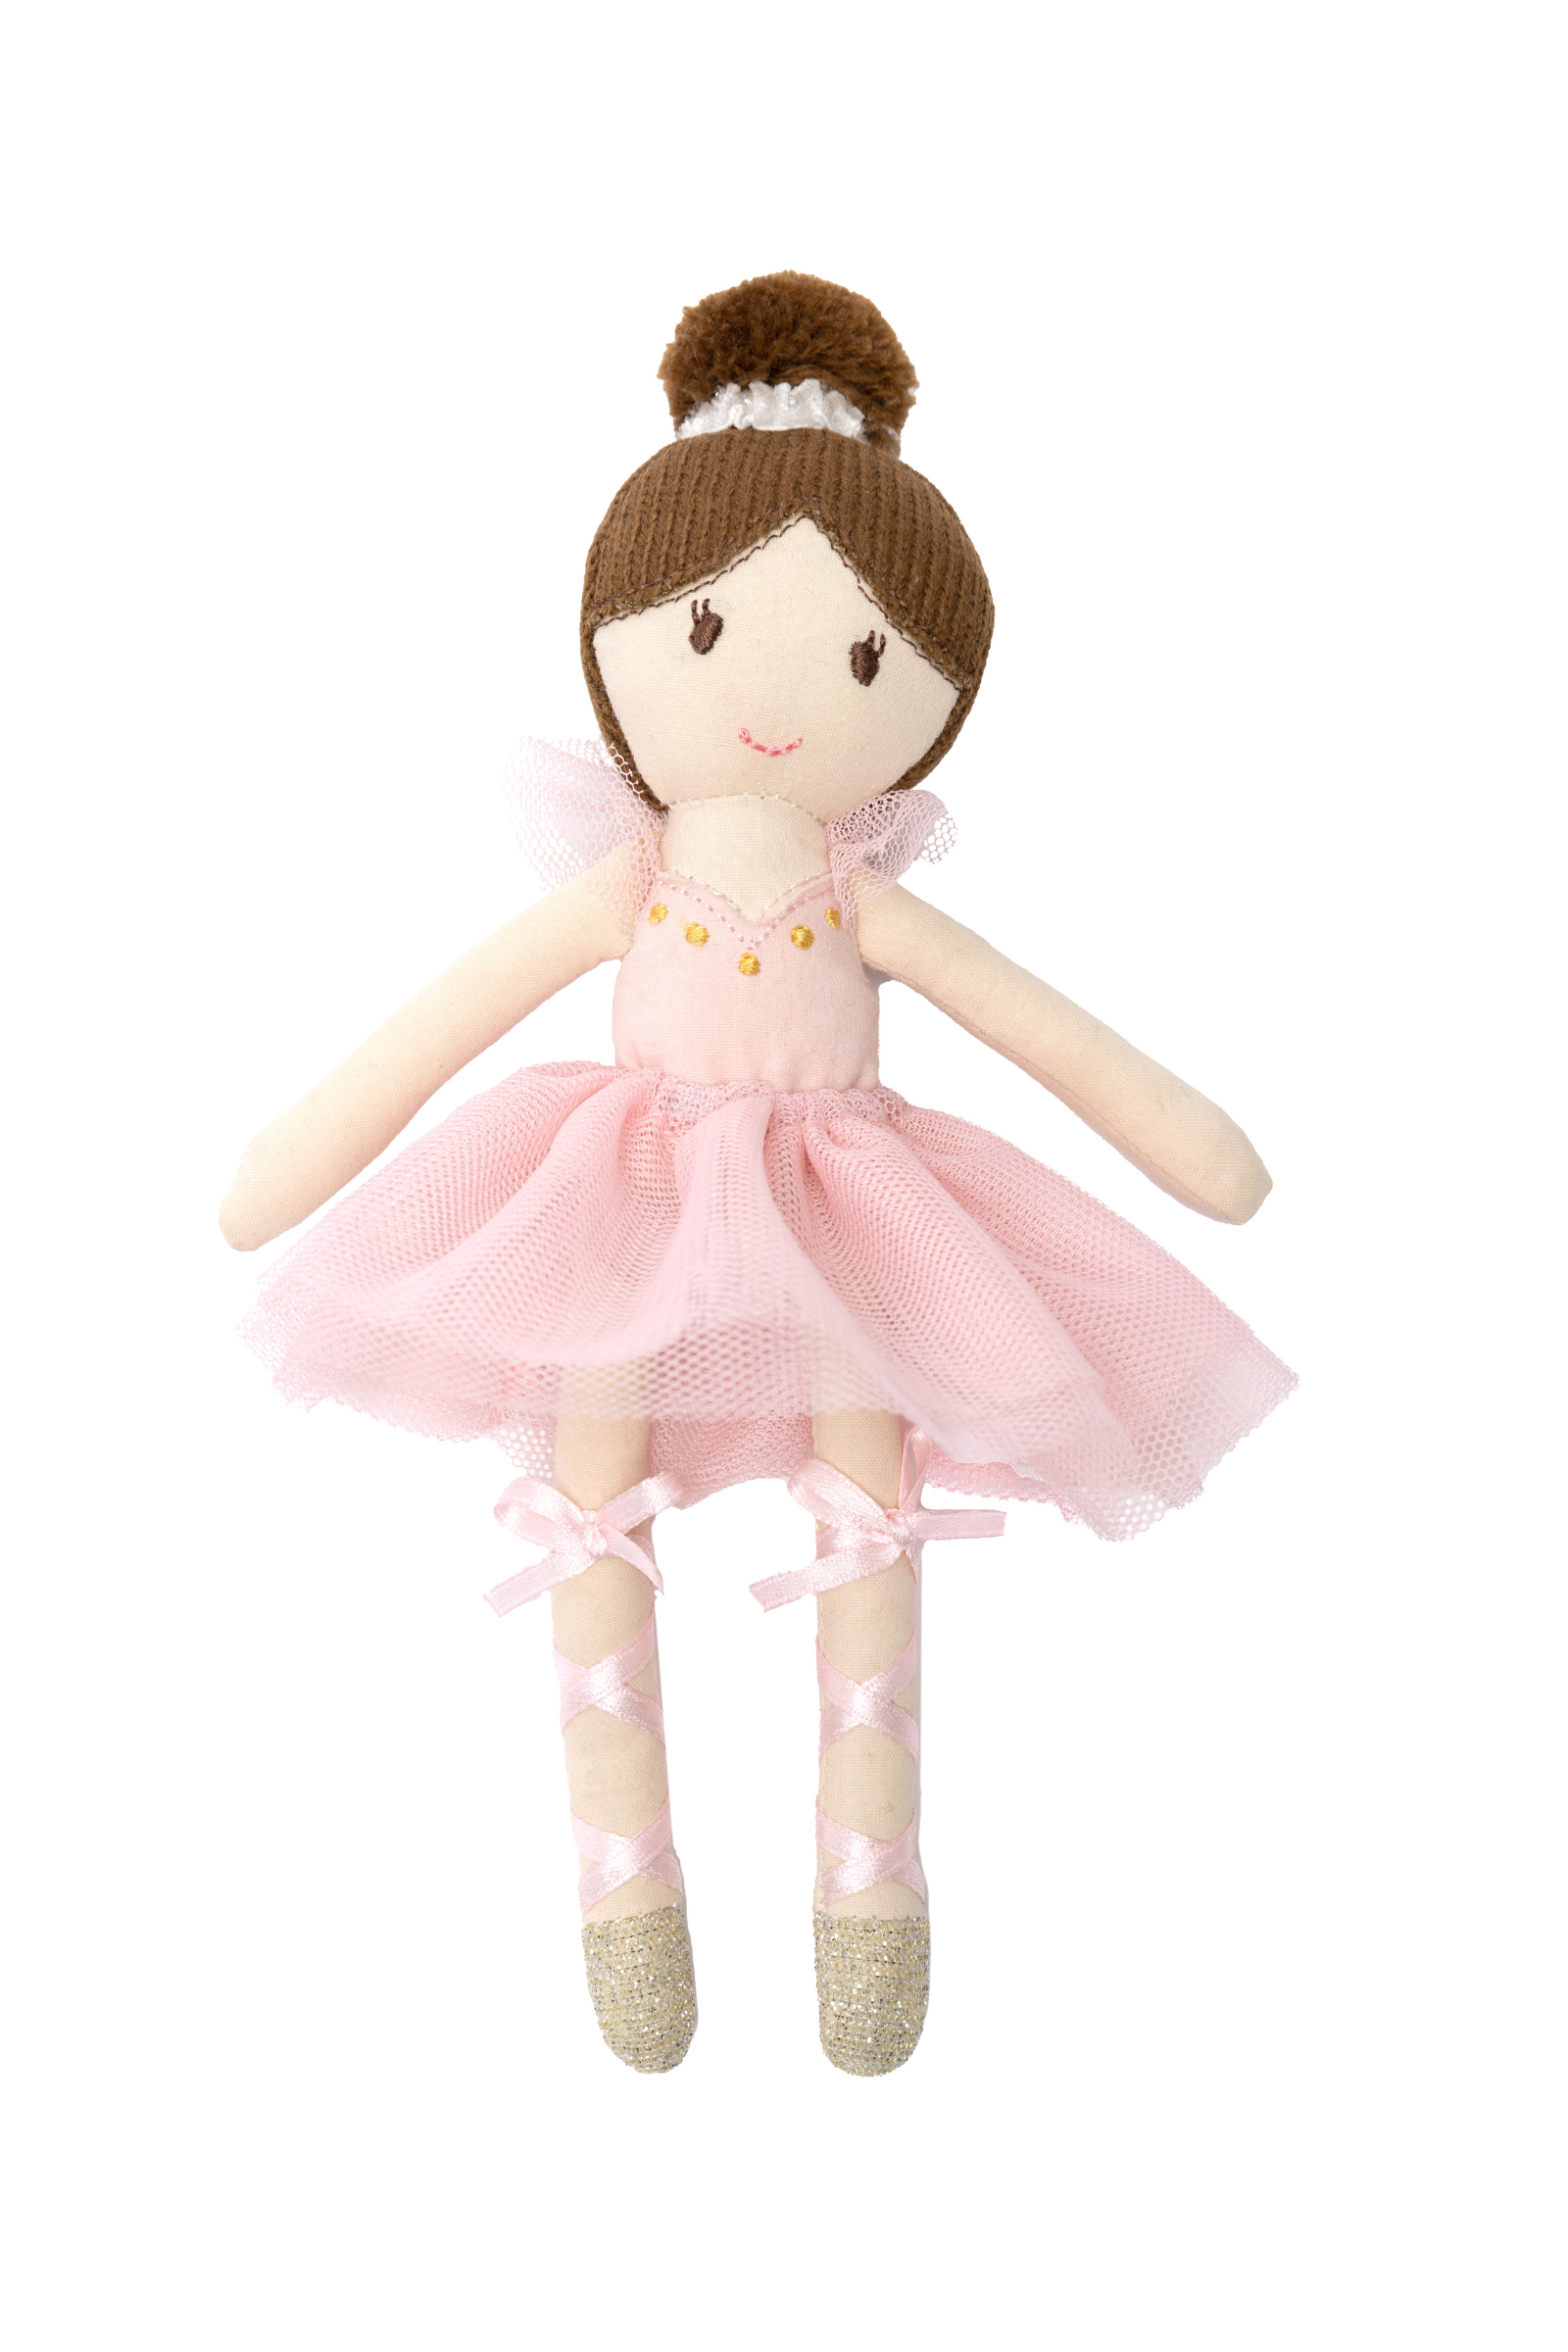 Anastasia the Ballerina Mini Doll